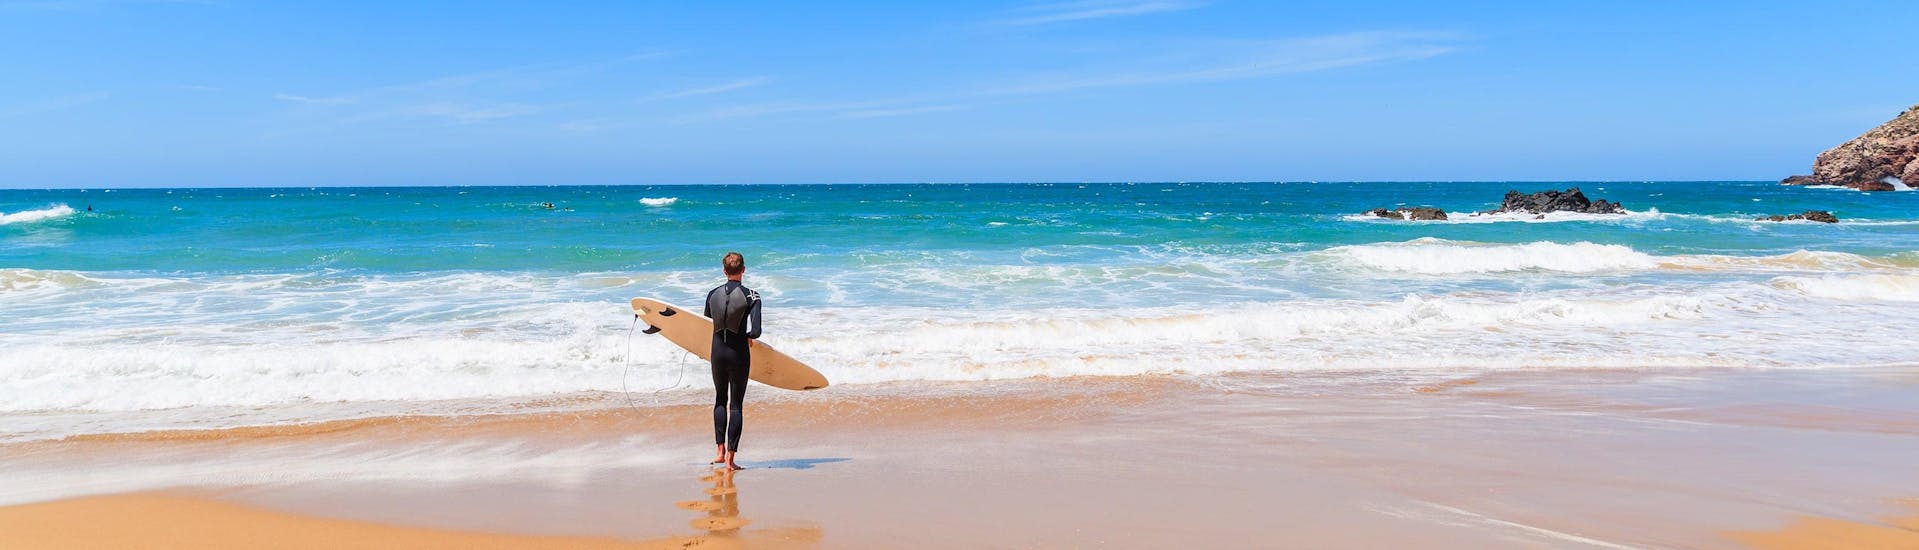 Ein junger Mann in einem Neoprenanzug steht beim Surfen in Aljezur mit seinem Surfbrett an einem Strand und blickt auf den Ozean.